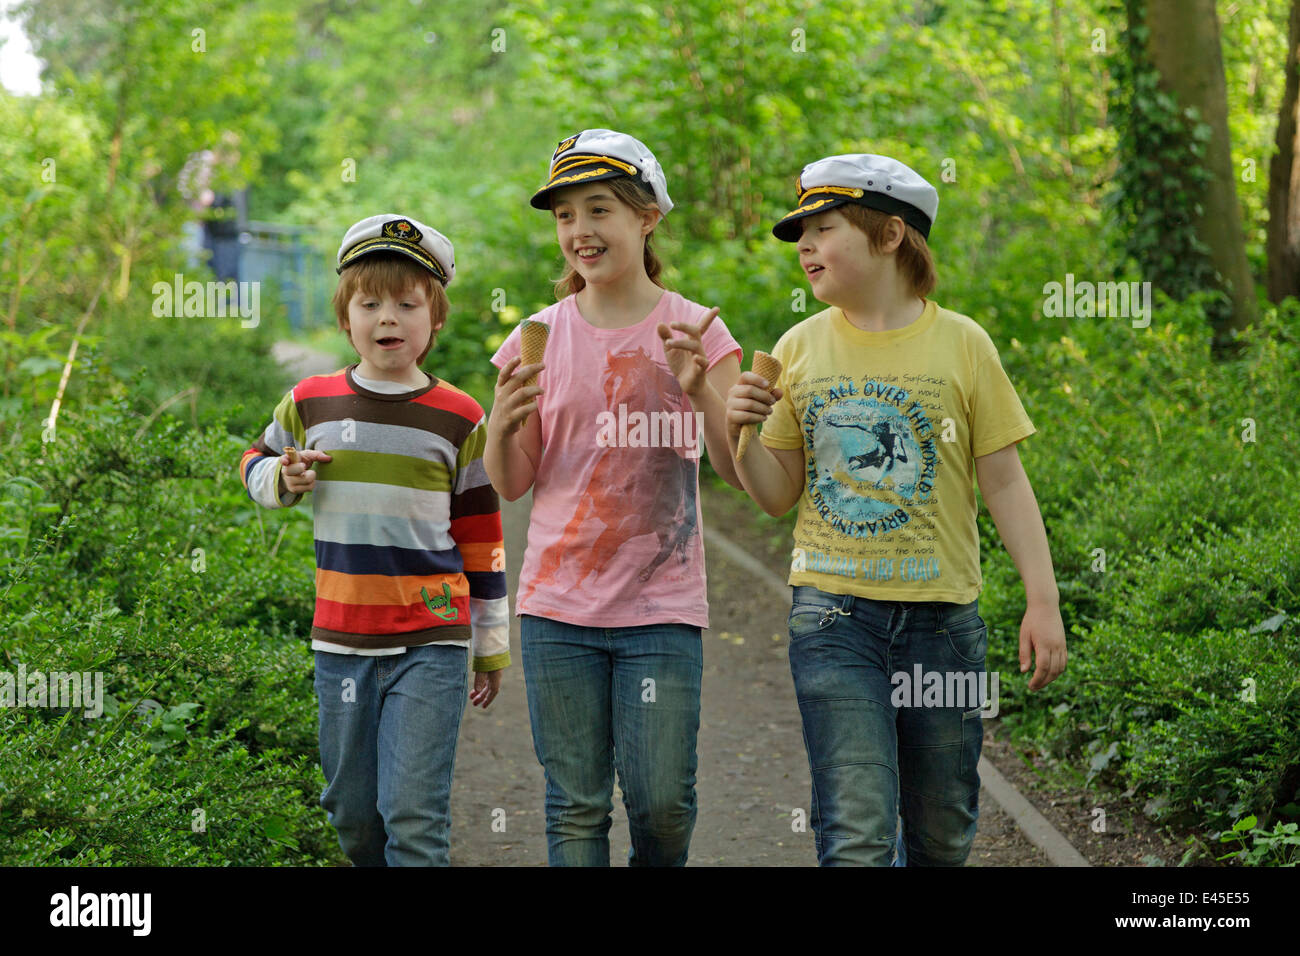 Tre bambini con il capitano i cappelli avente una conversazione Foto Stock